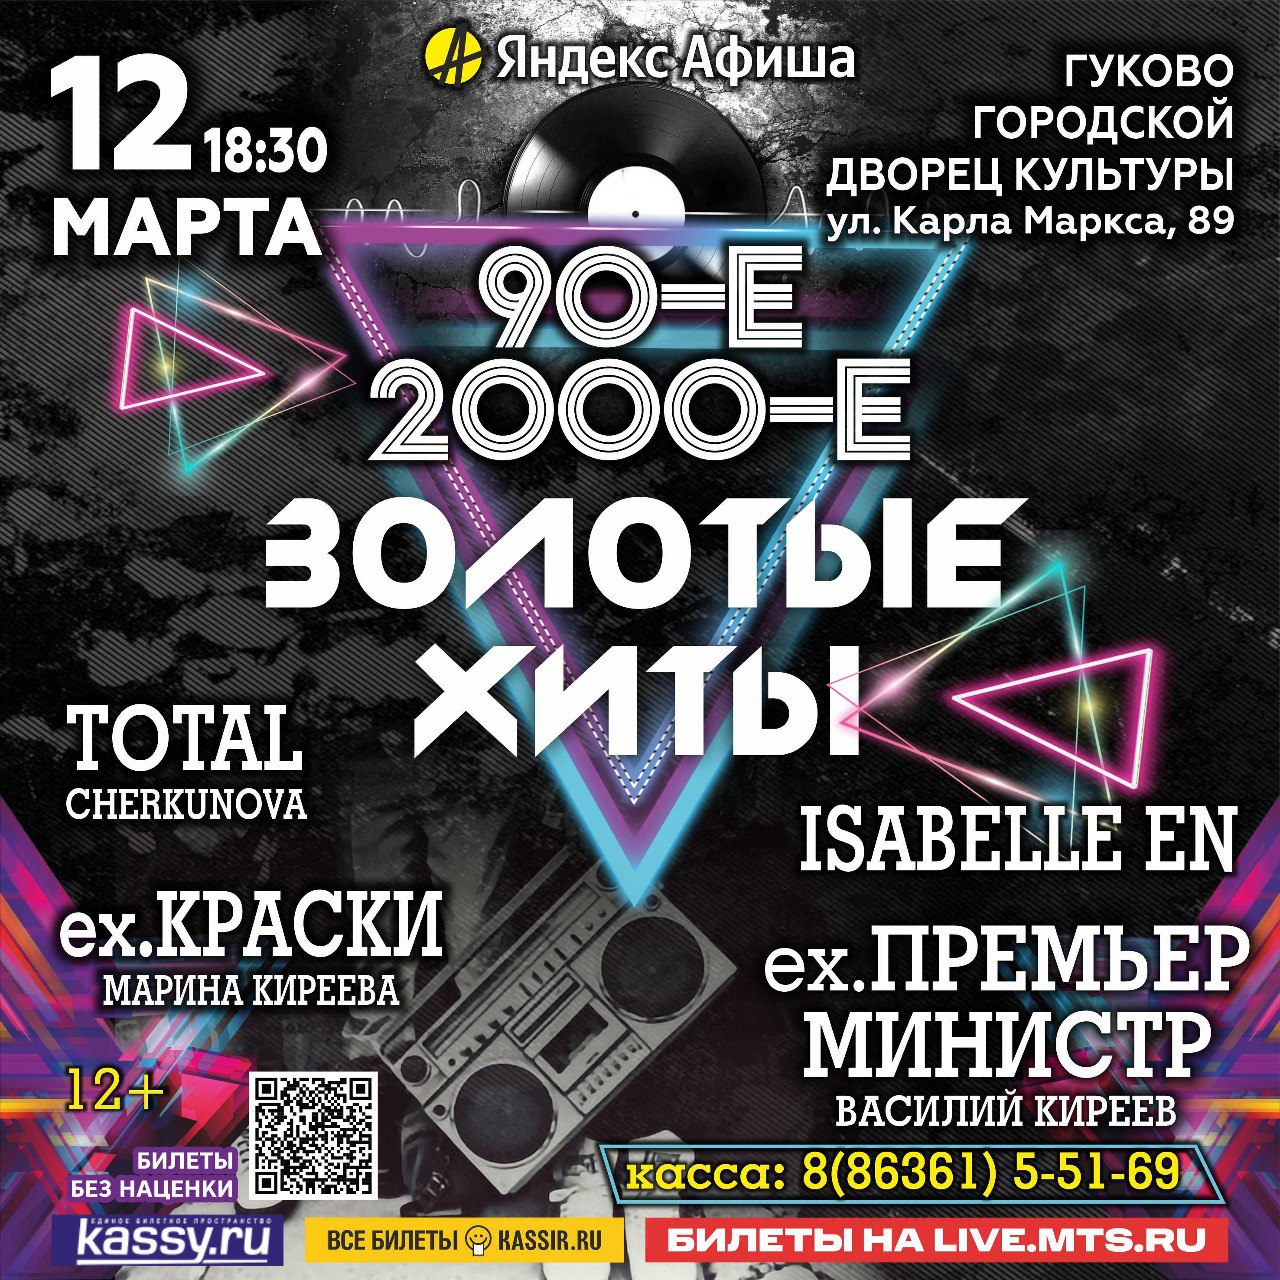 12 марта в гуковском Городском Дворце культуры пройдёт концерт «Золотые хиты». Легендарные группы 90-х и 2000-х